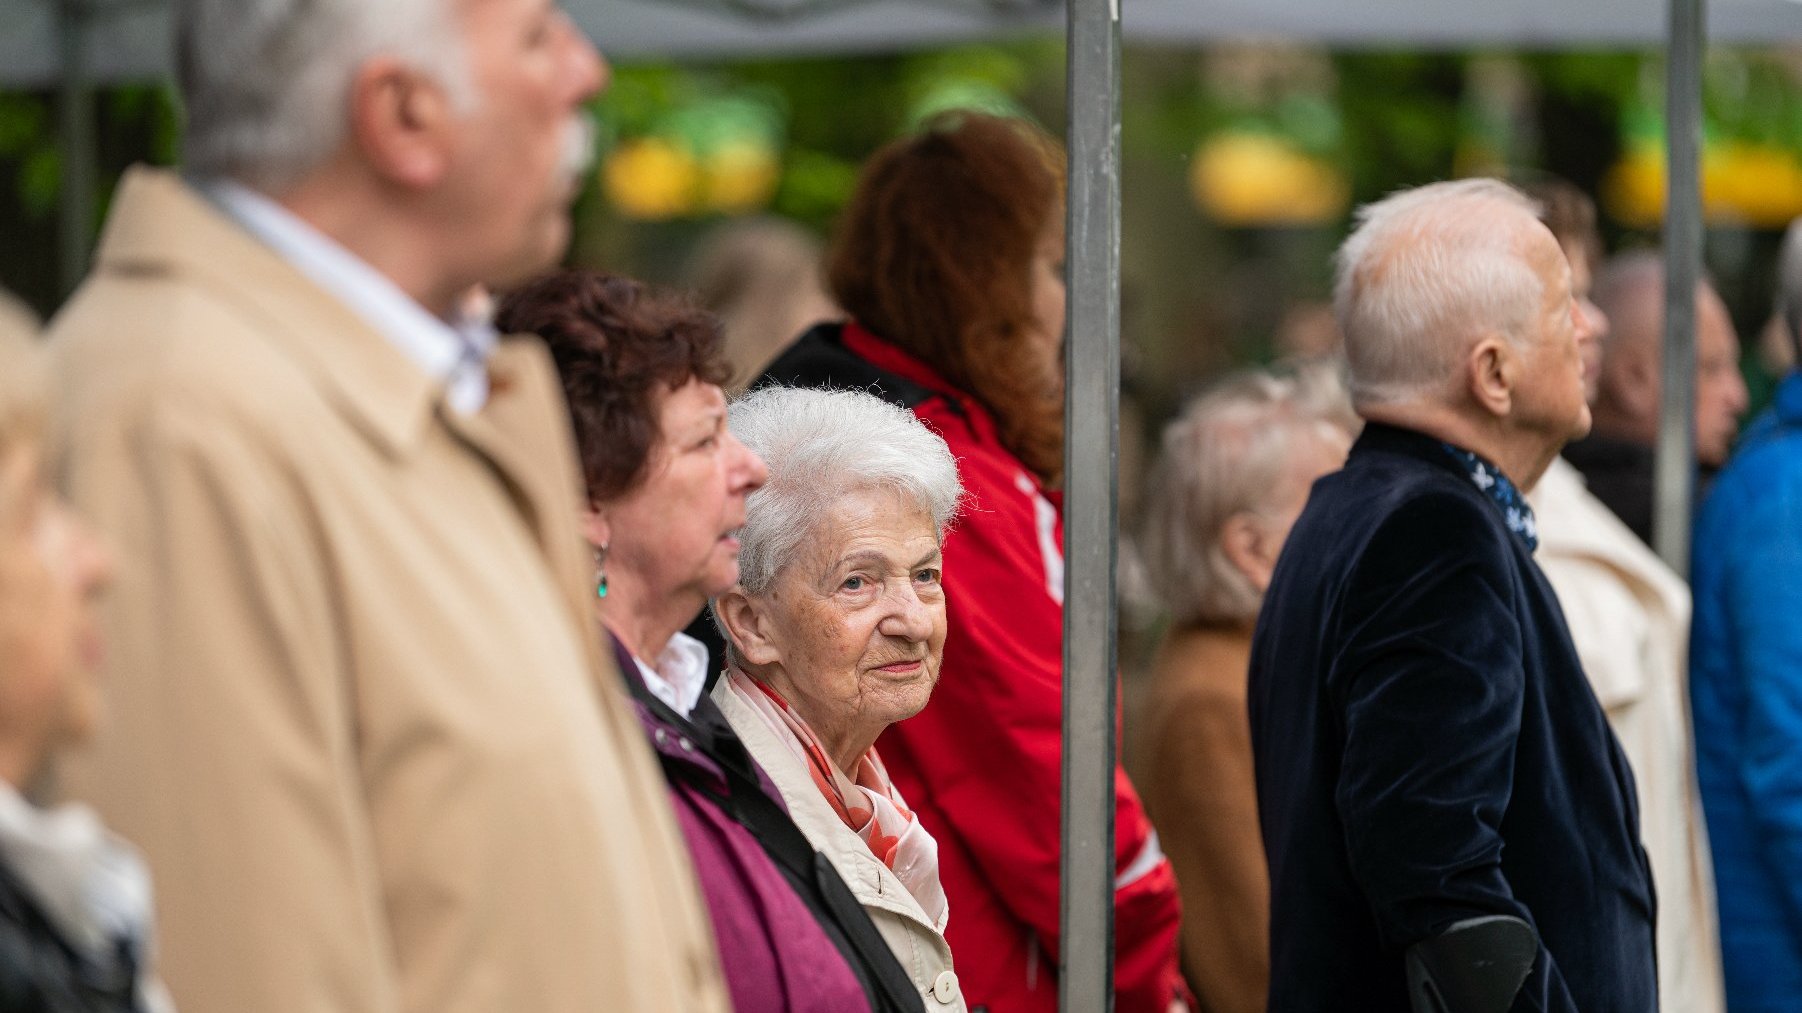 Na zdjęciu uczestnicy uroczystości, w centrum starsza kobieta o siwych włosach